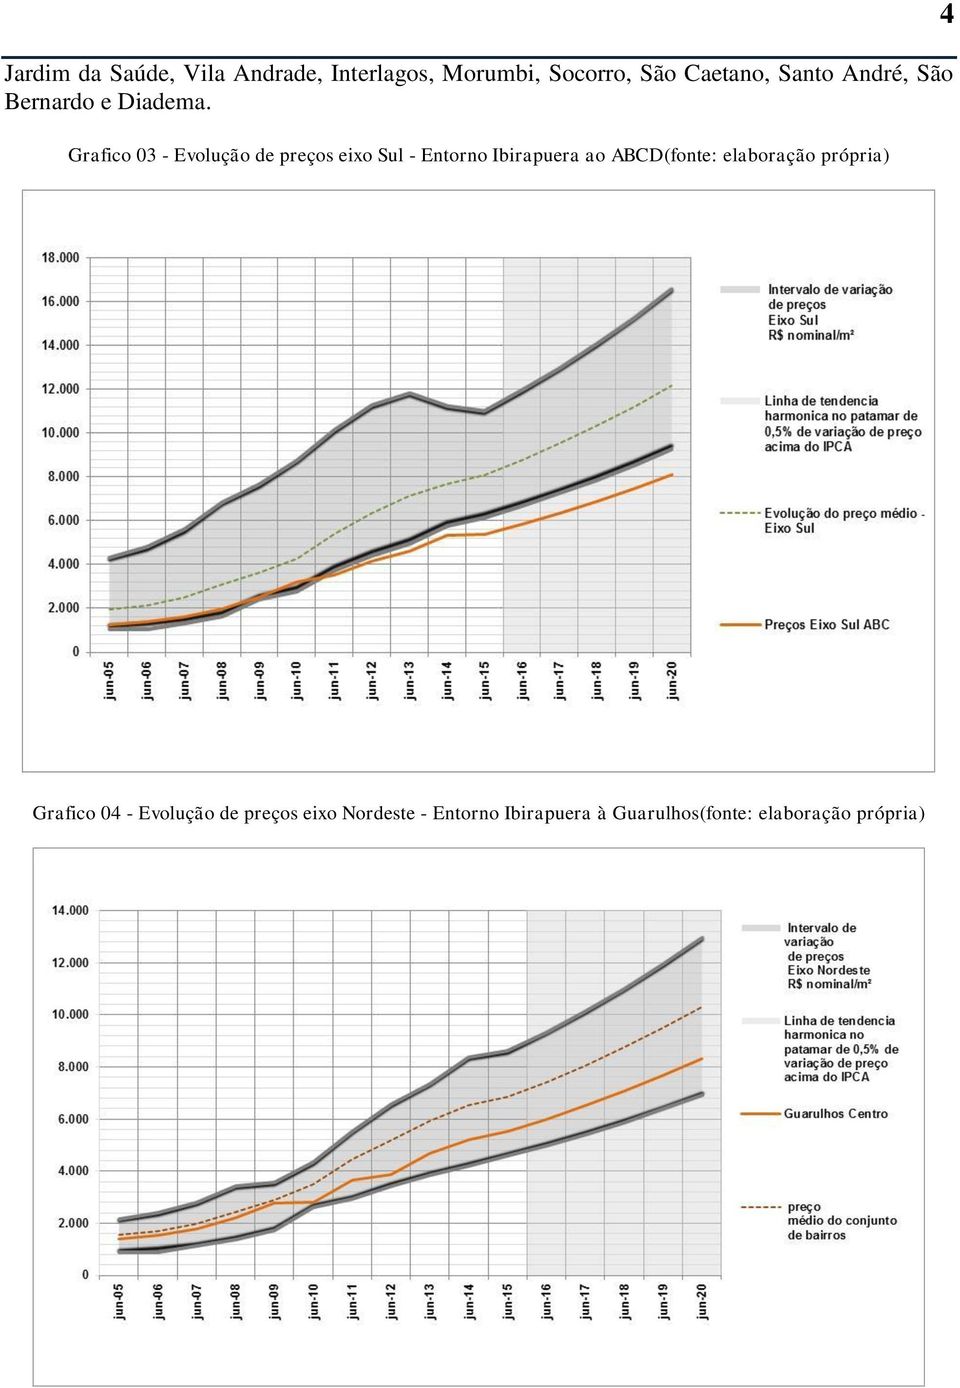 Grafico 03 - Evolução de preços eixo Sul - Entorno Ibirapuera ao ABCD(fonte: